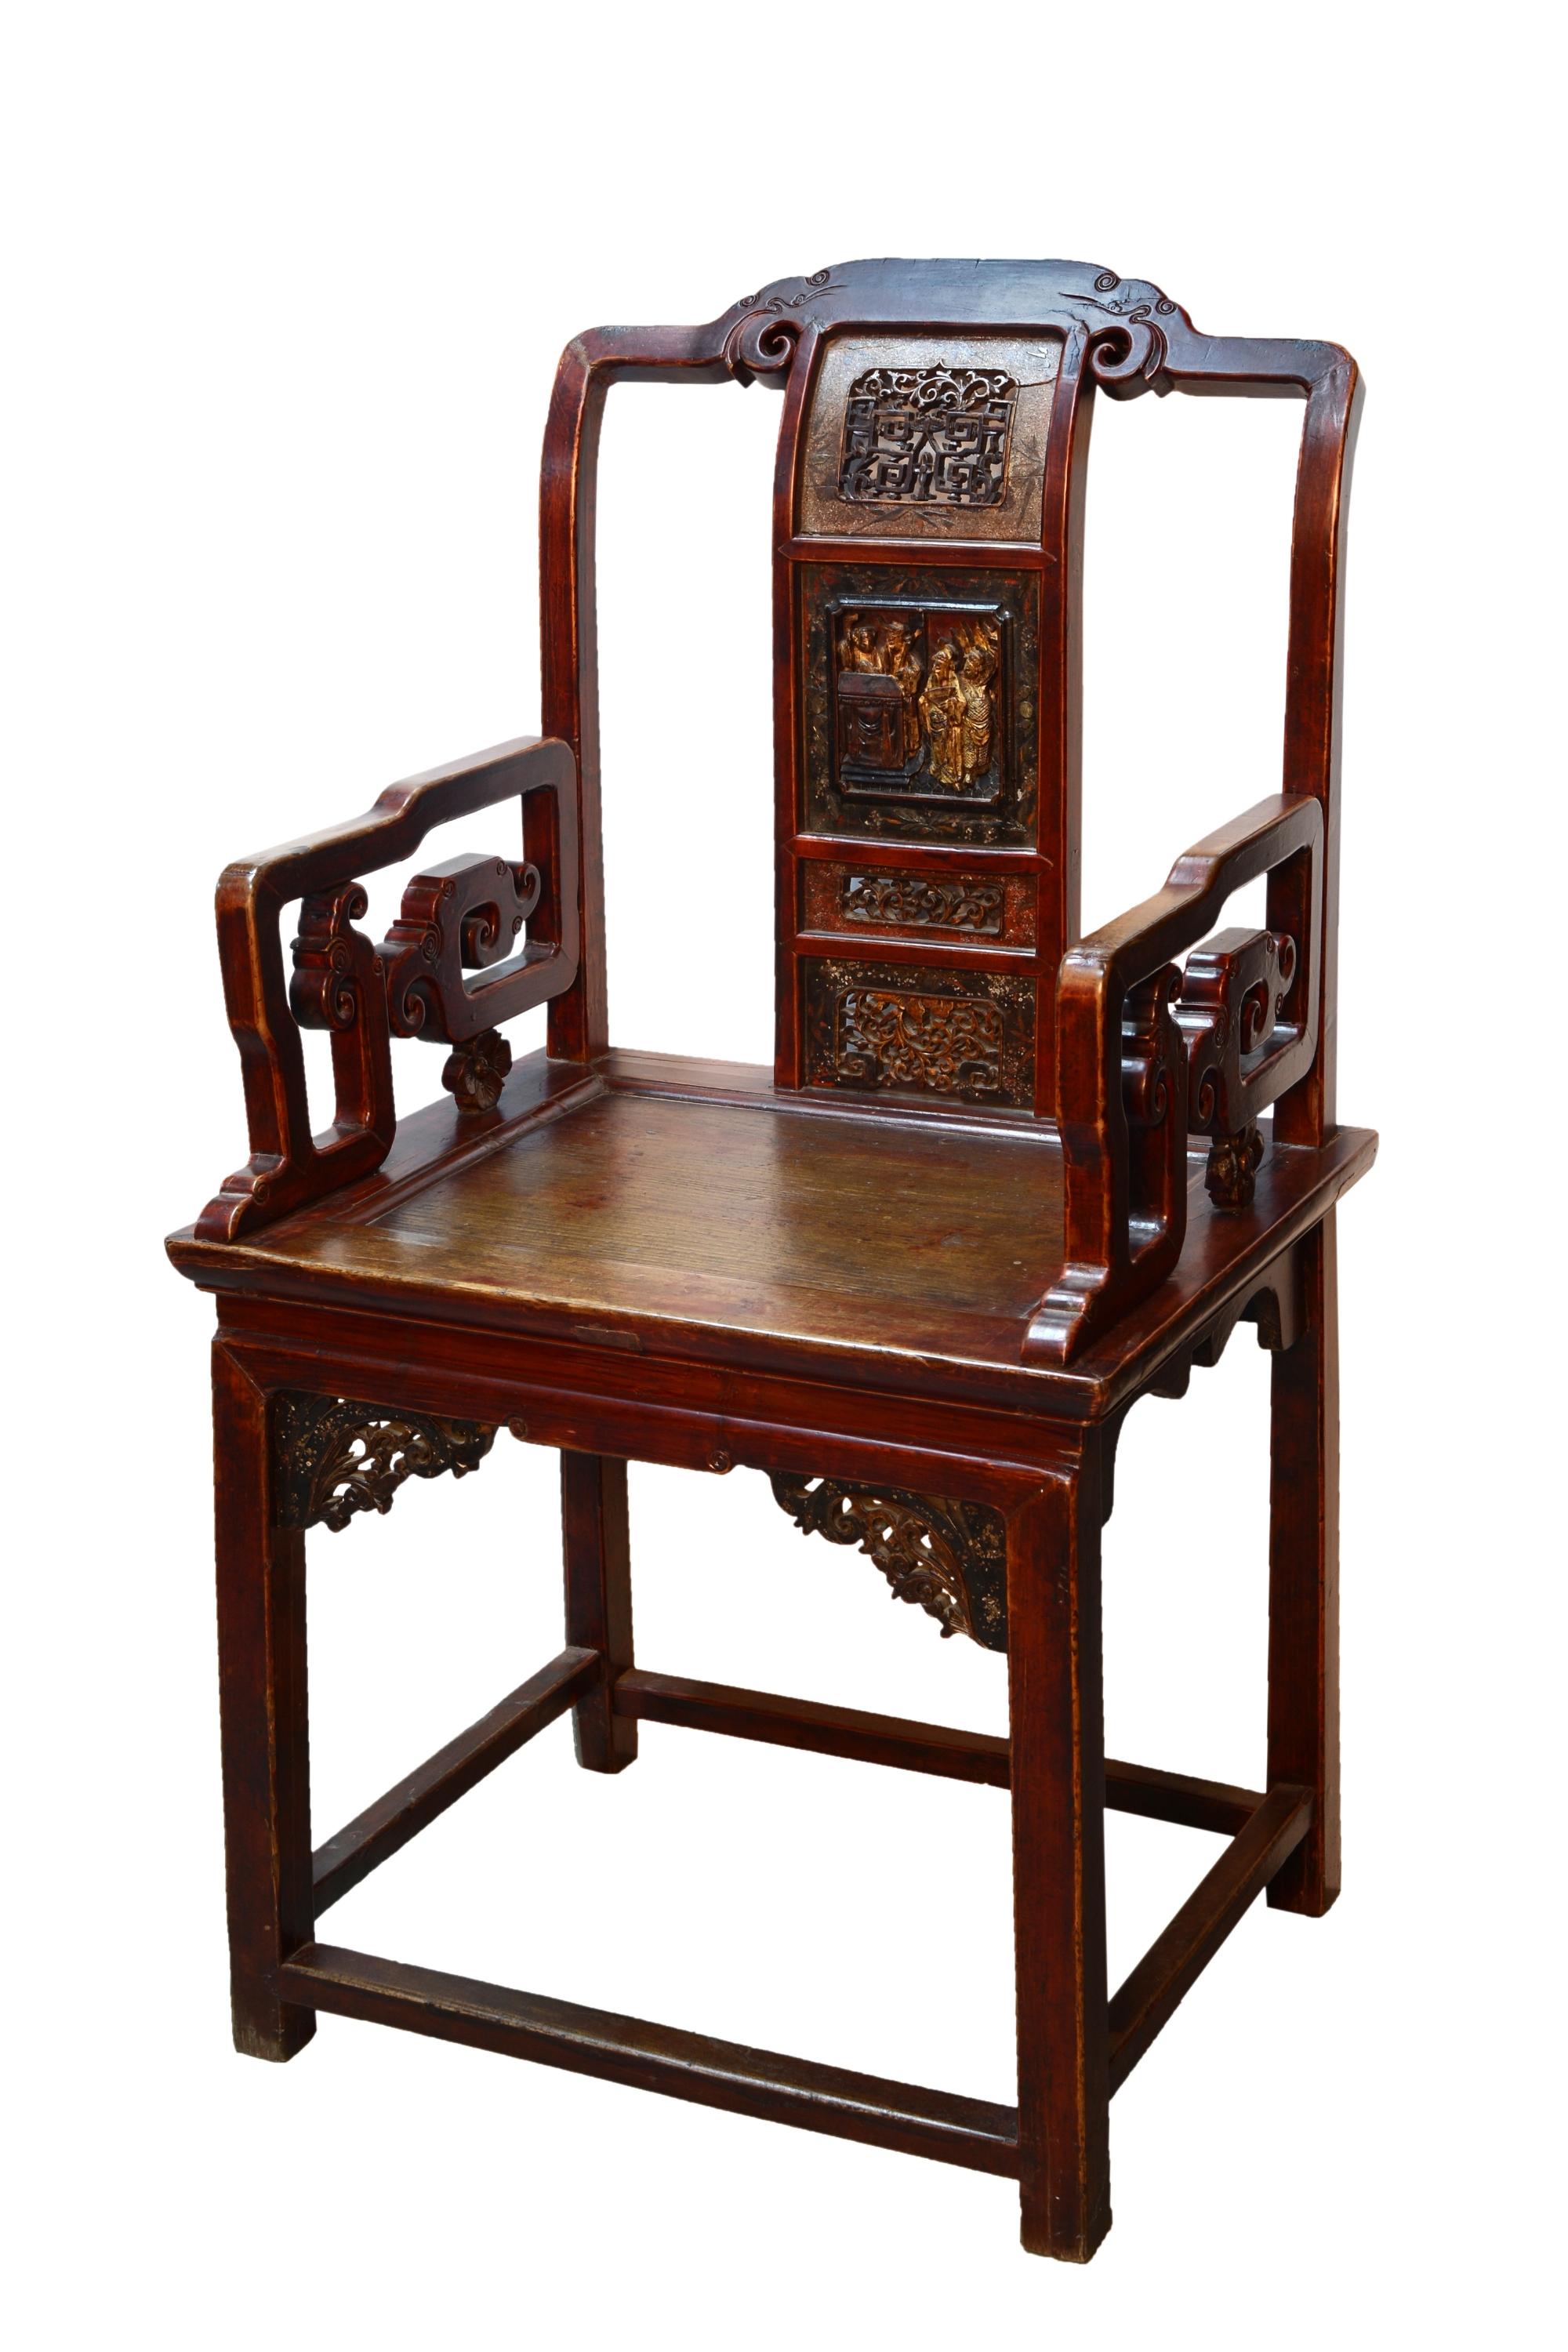 4 Stück Set.
Stuhl mit hoher Rückenlehne und Armlehnen aus lackiertem Holz, verziert mit traditionellen, von China inspirierten Schnitzereien. Man beachte die lackierten Kompositionen auf den Kambranen der Vorderseite, die Form der Beine, der Arme